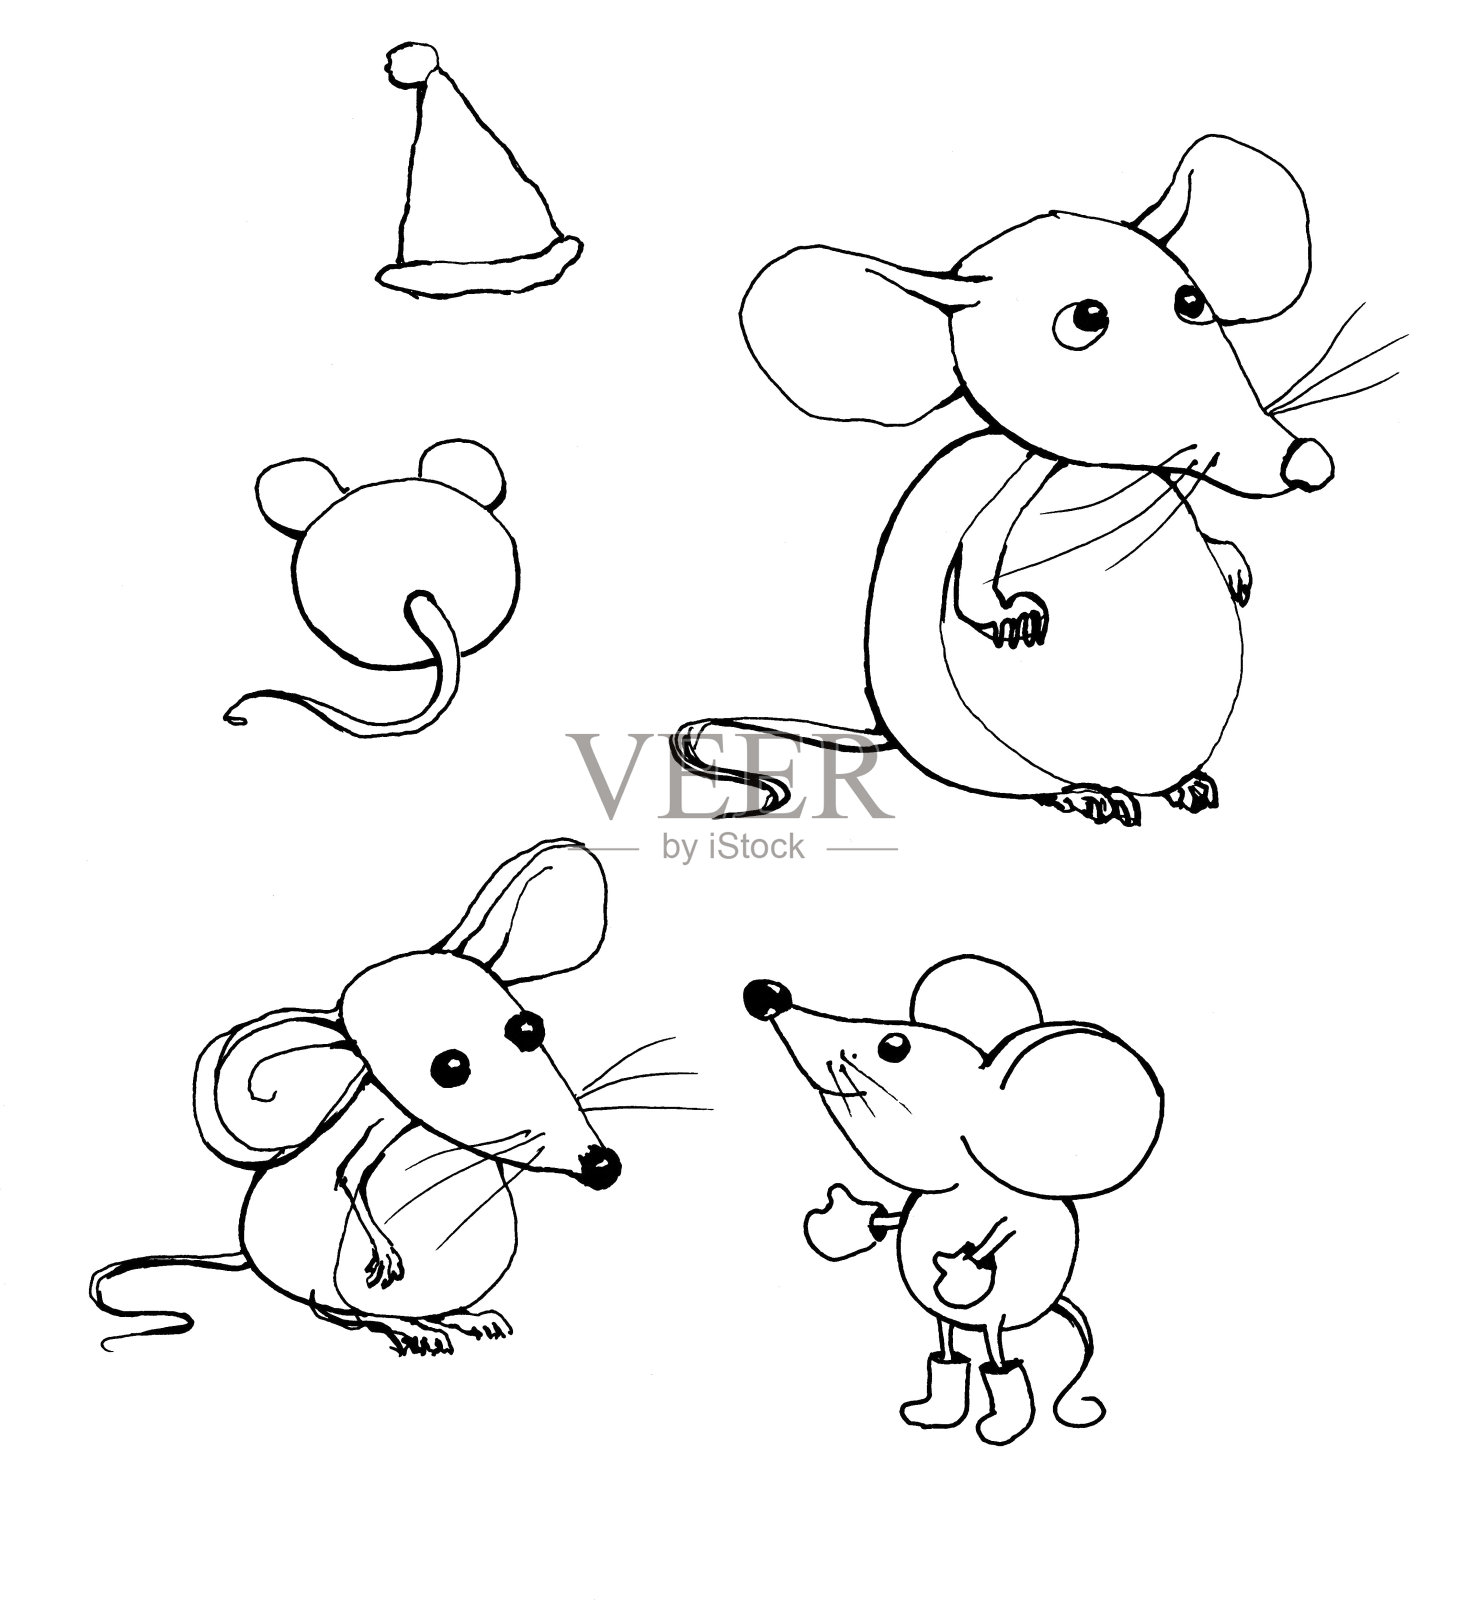 一个草图三个鼠标侧视图，一个鼠标后视图和一顶帽子。图形艺术。插画图片素材